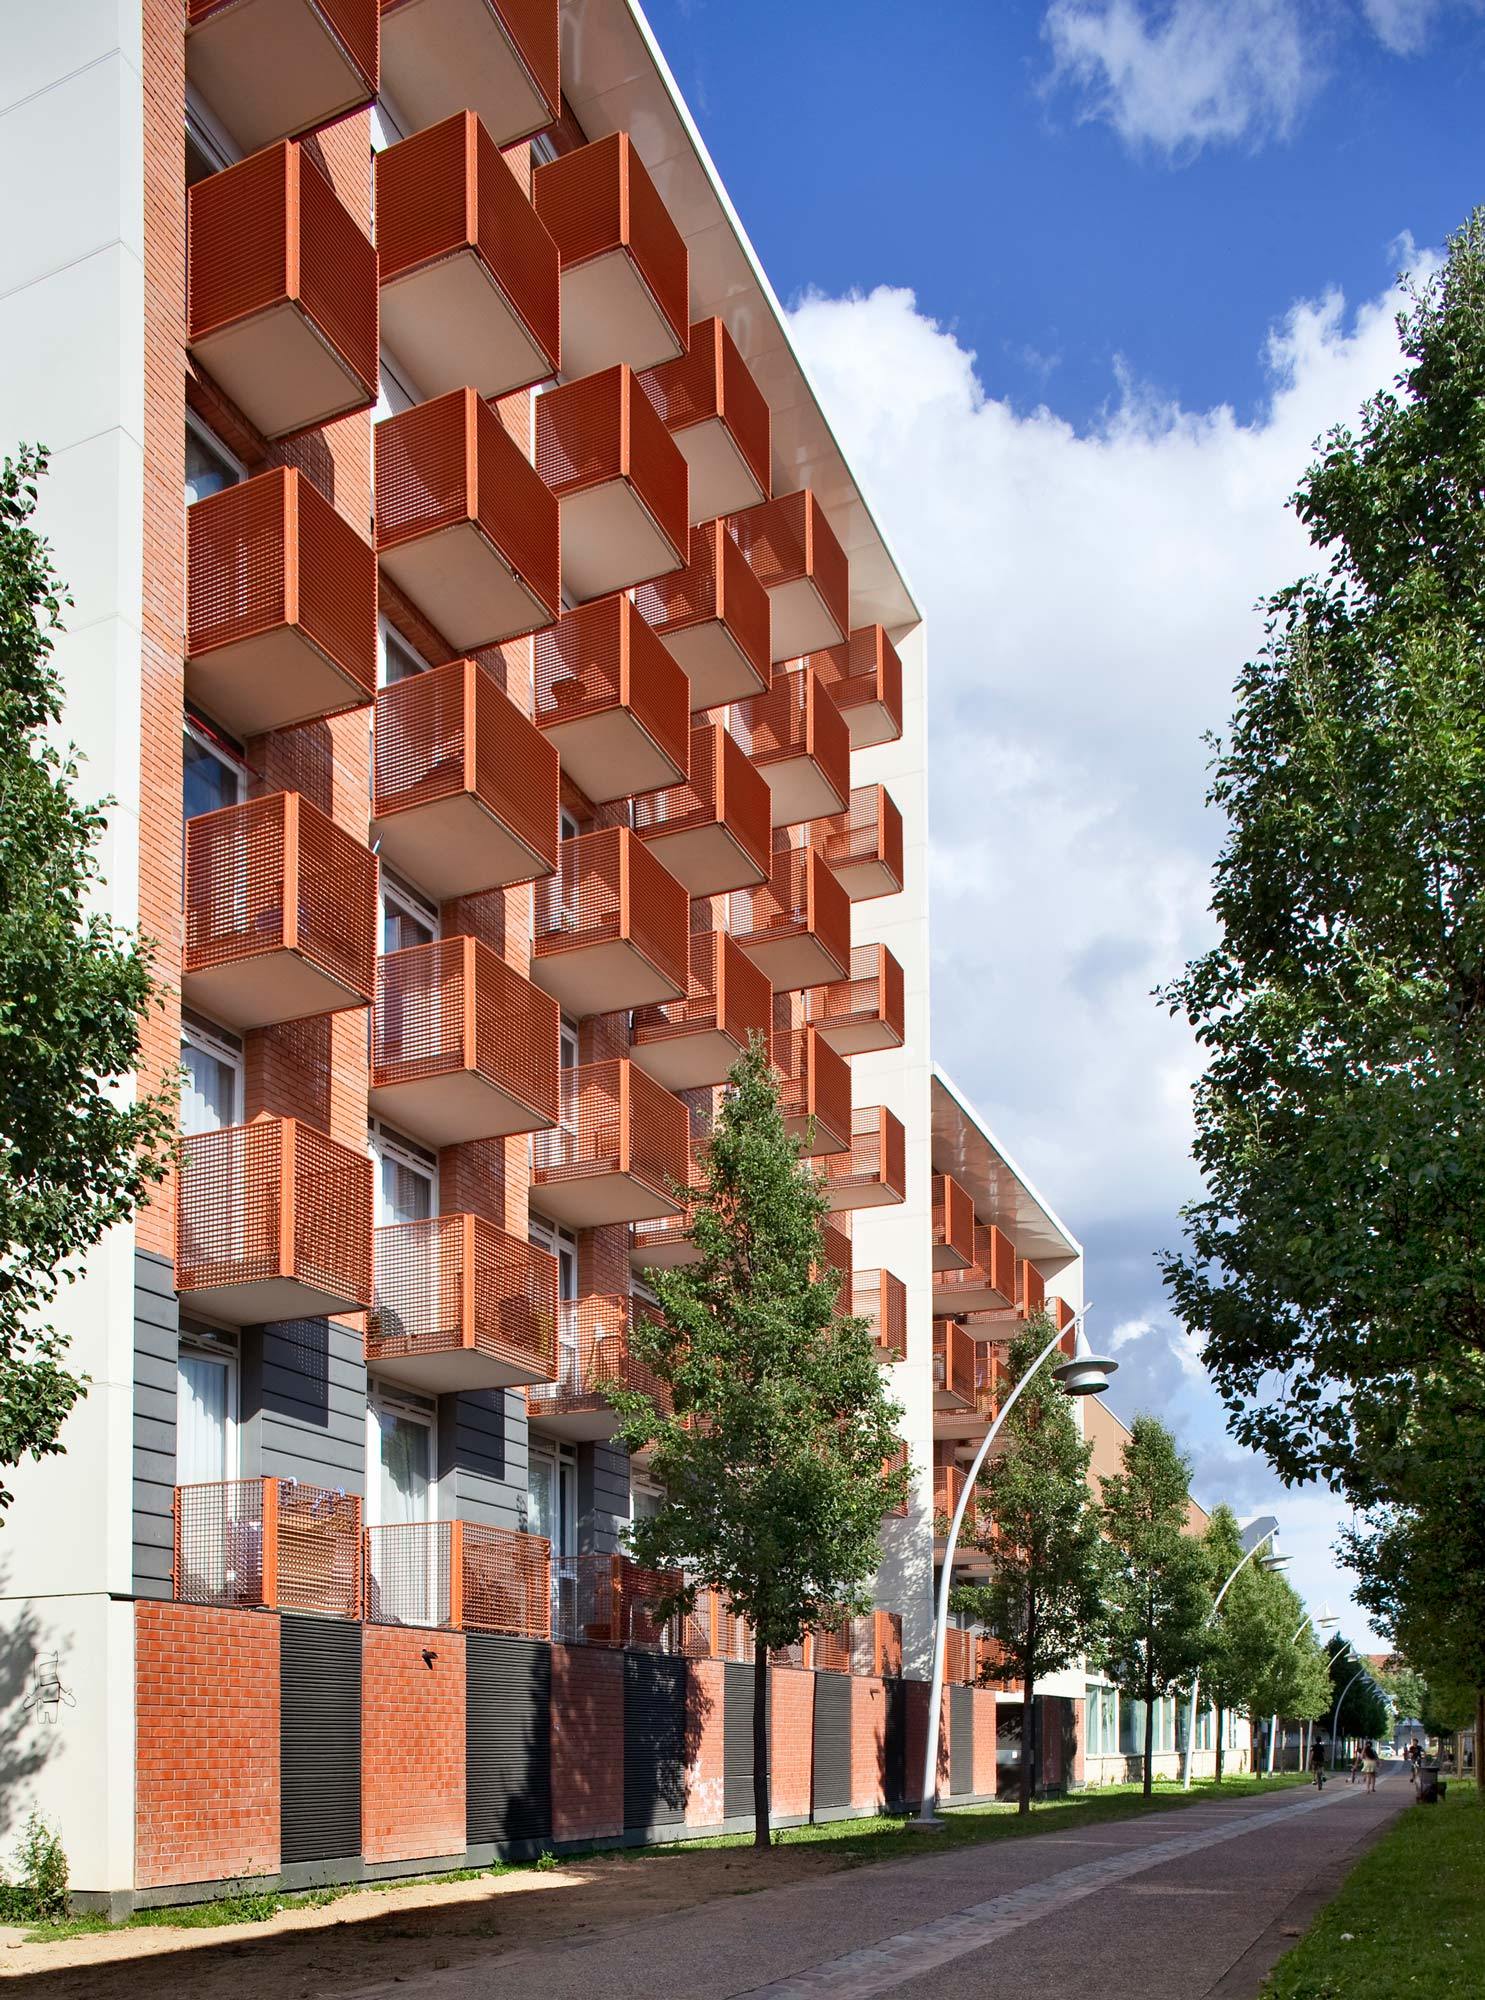 Ivry-sur-Seine, Logements, résidence étudiante, HGA – Hubert Godet Architectes